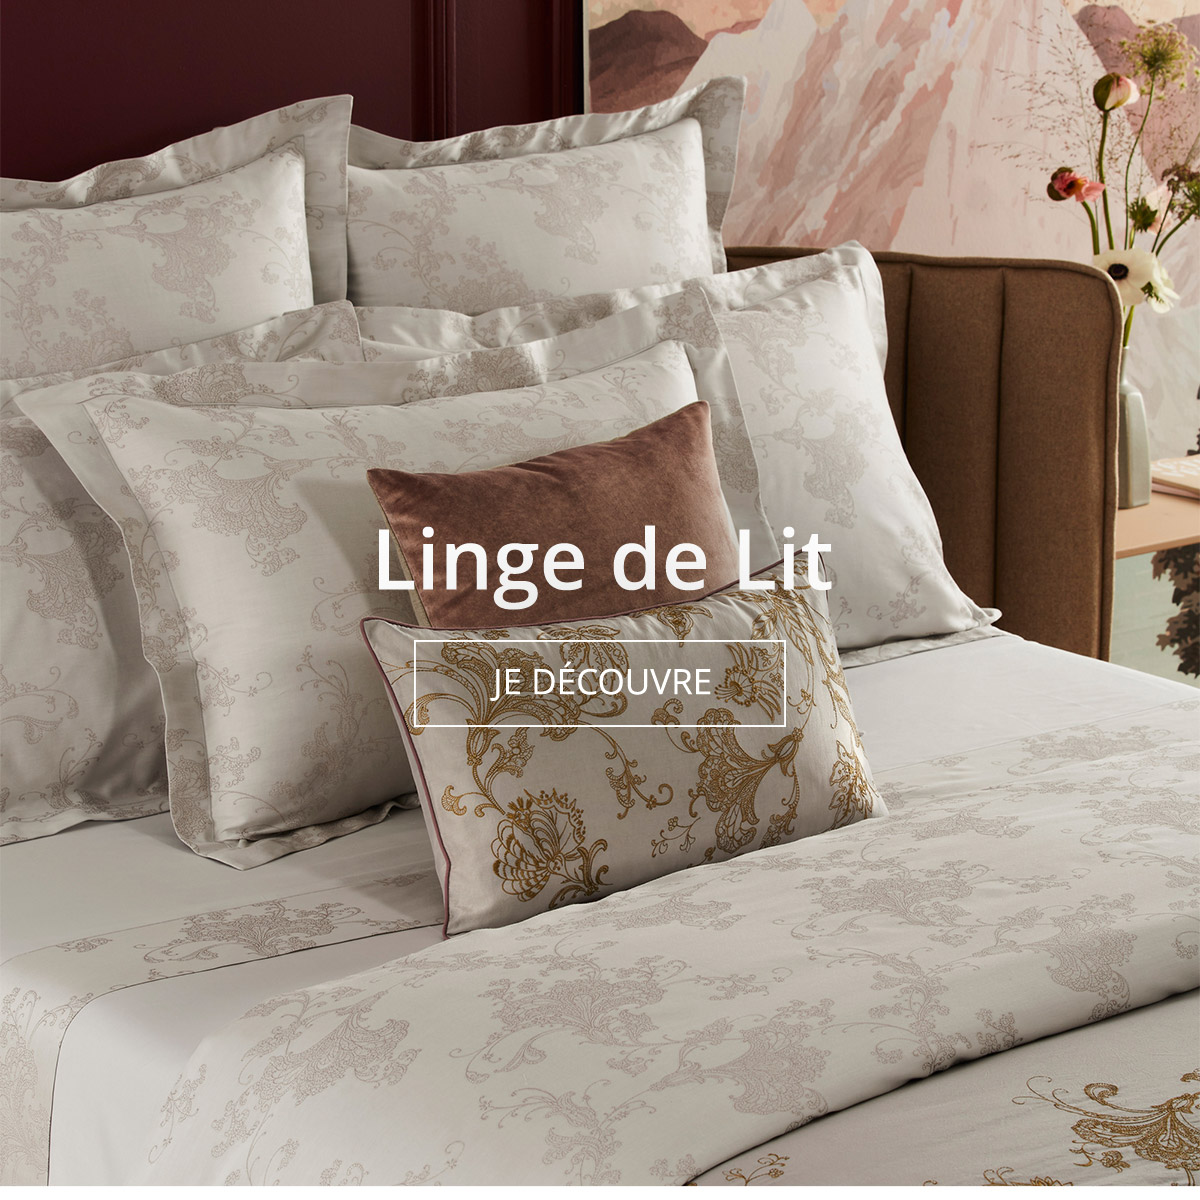 Linge de lit de luxe, parures de lit haut de gamme Yves Delorme